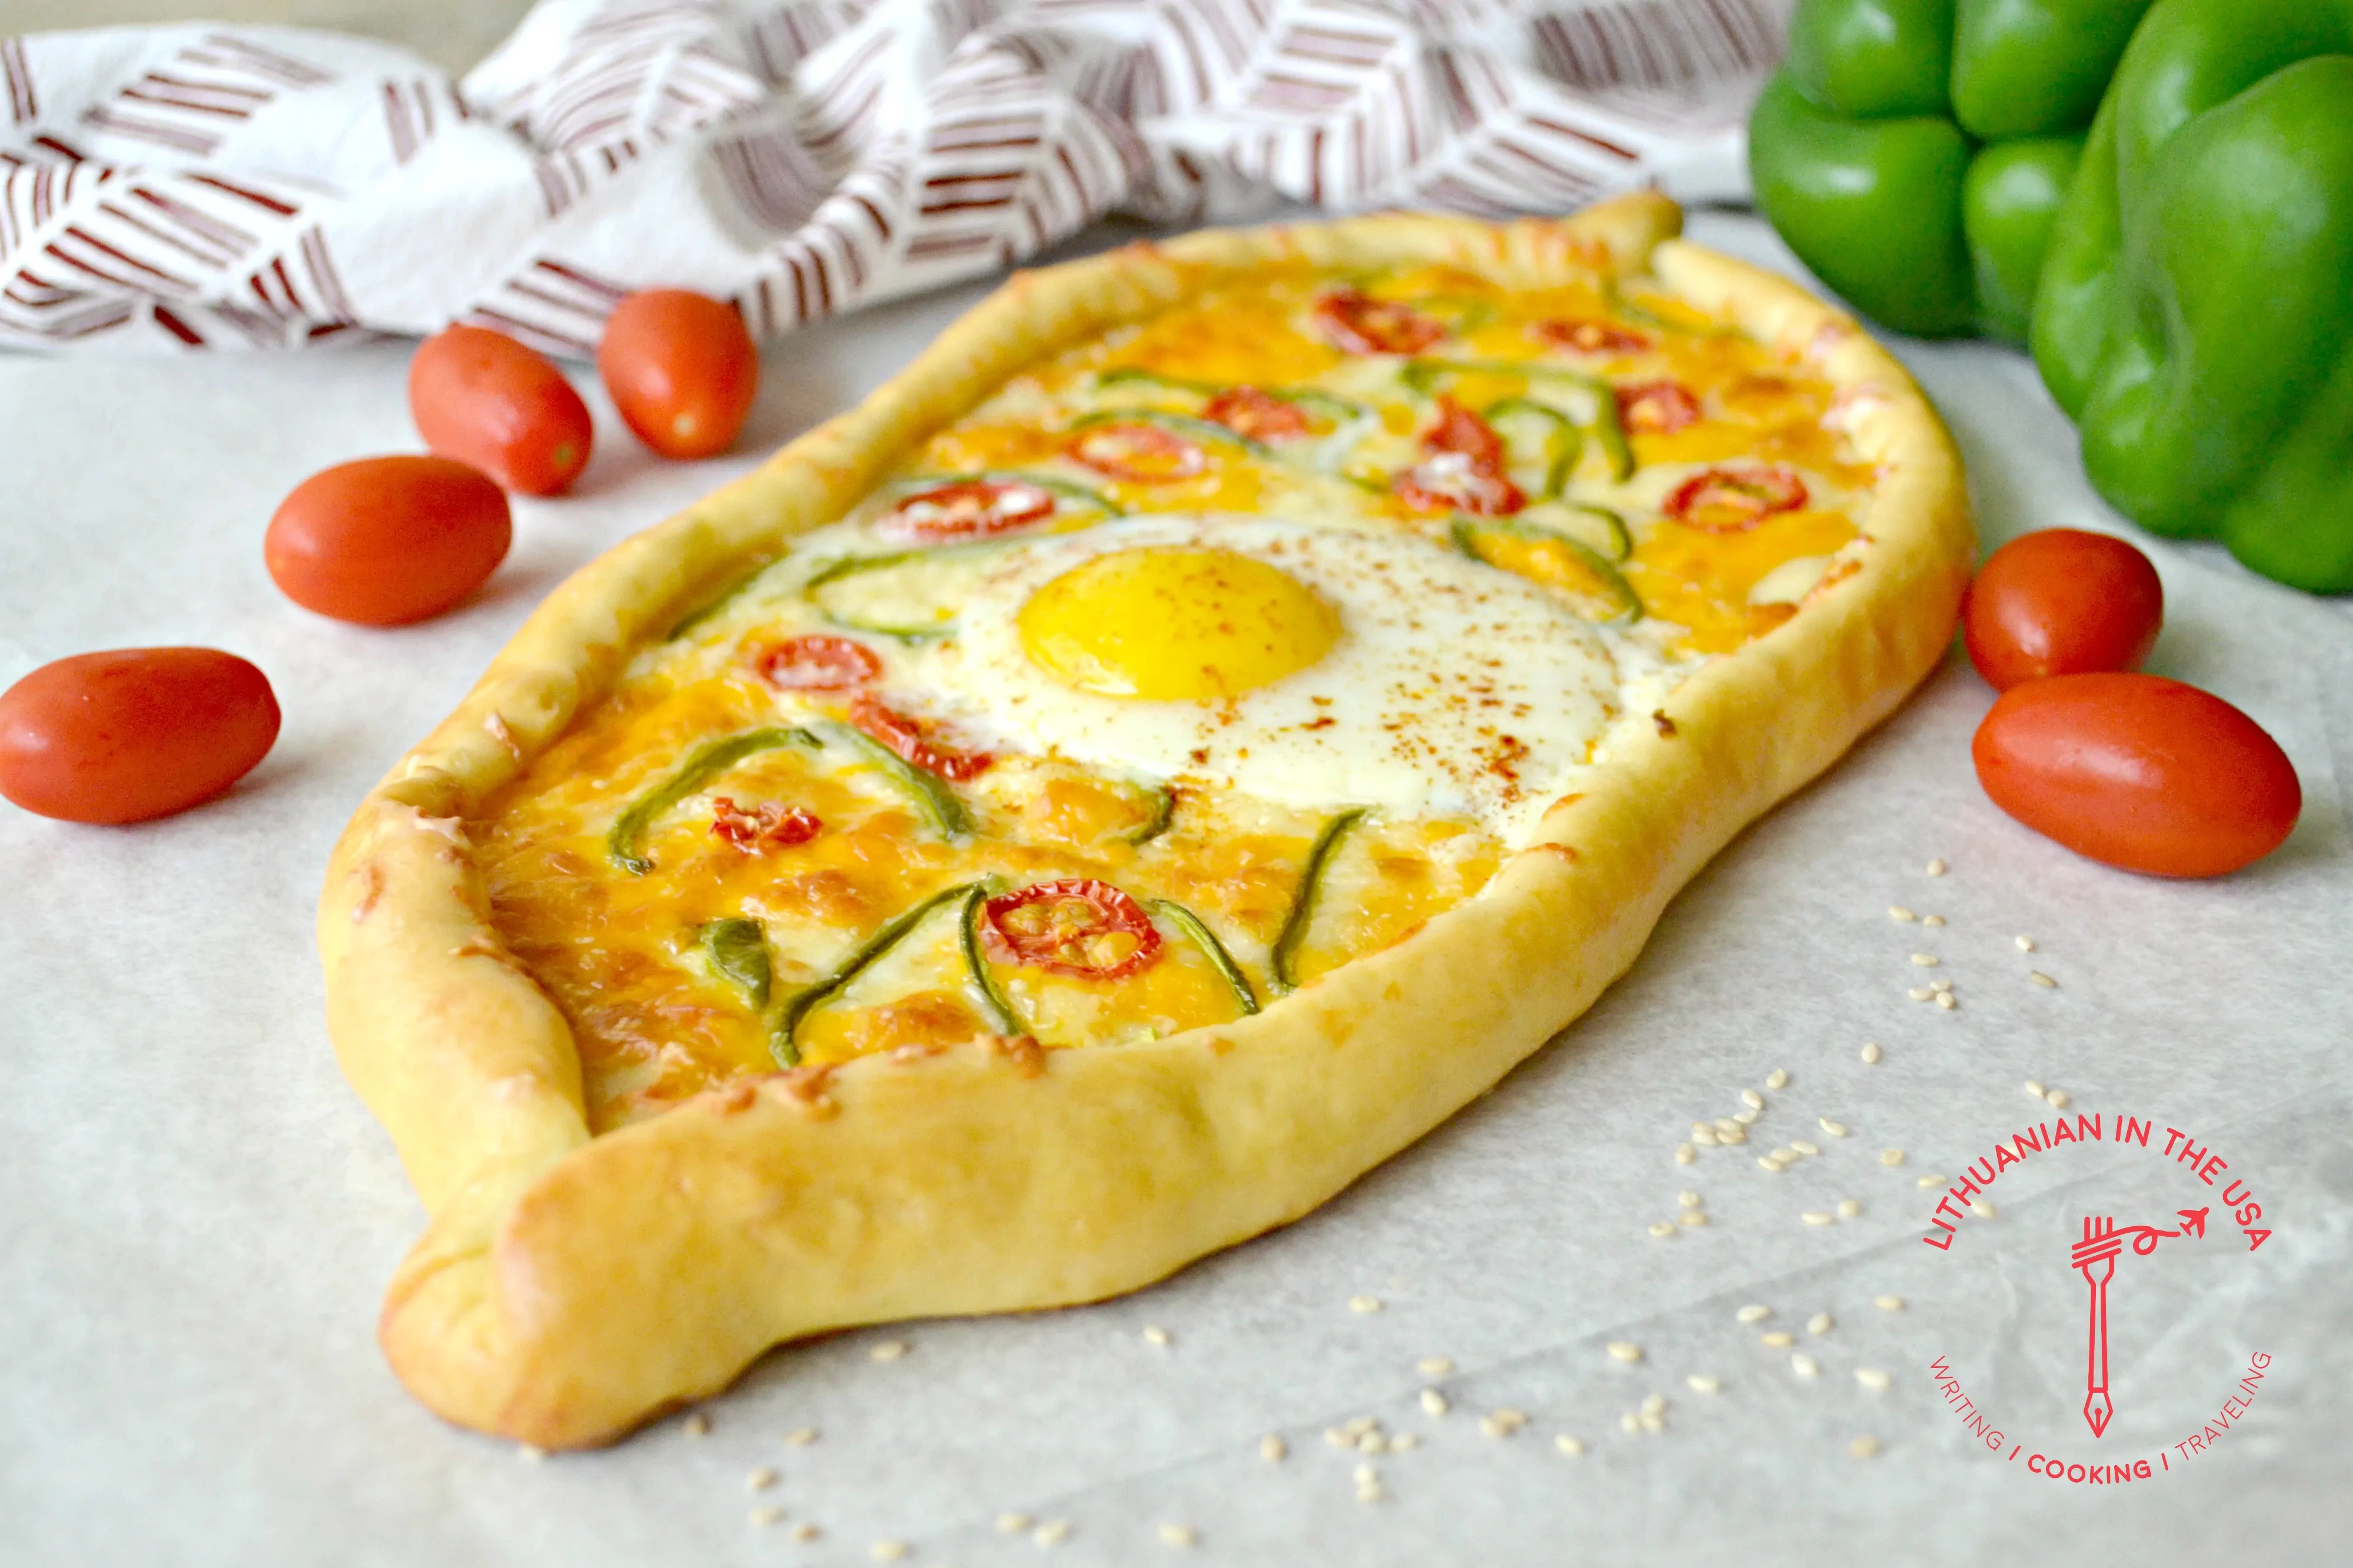 Türkische Pide-Pizza - Türkische Pide-Pizza mit Käse, Tomaten und Ei